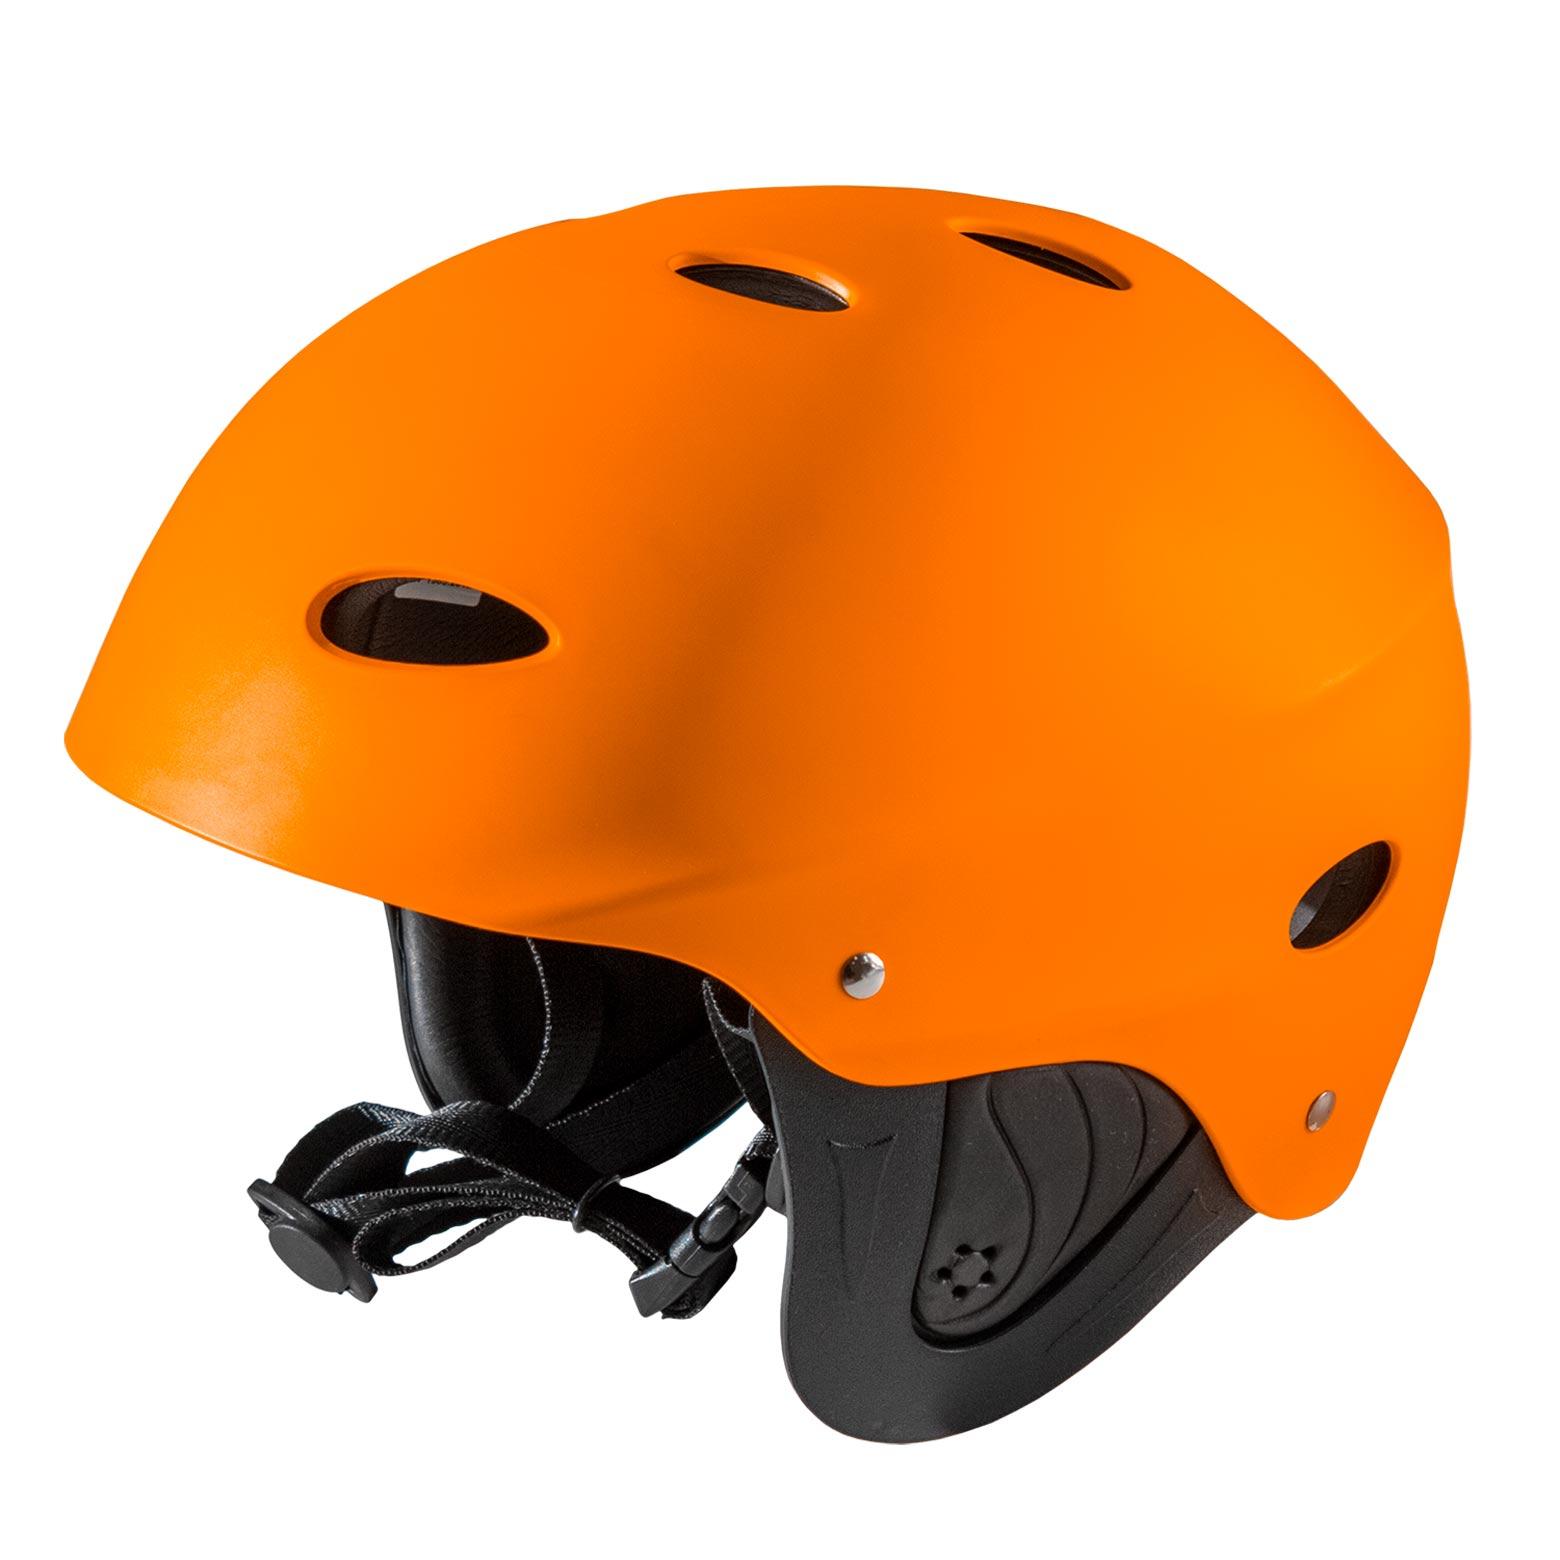 Waterfall Helmet Outdoor+ Orange